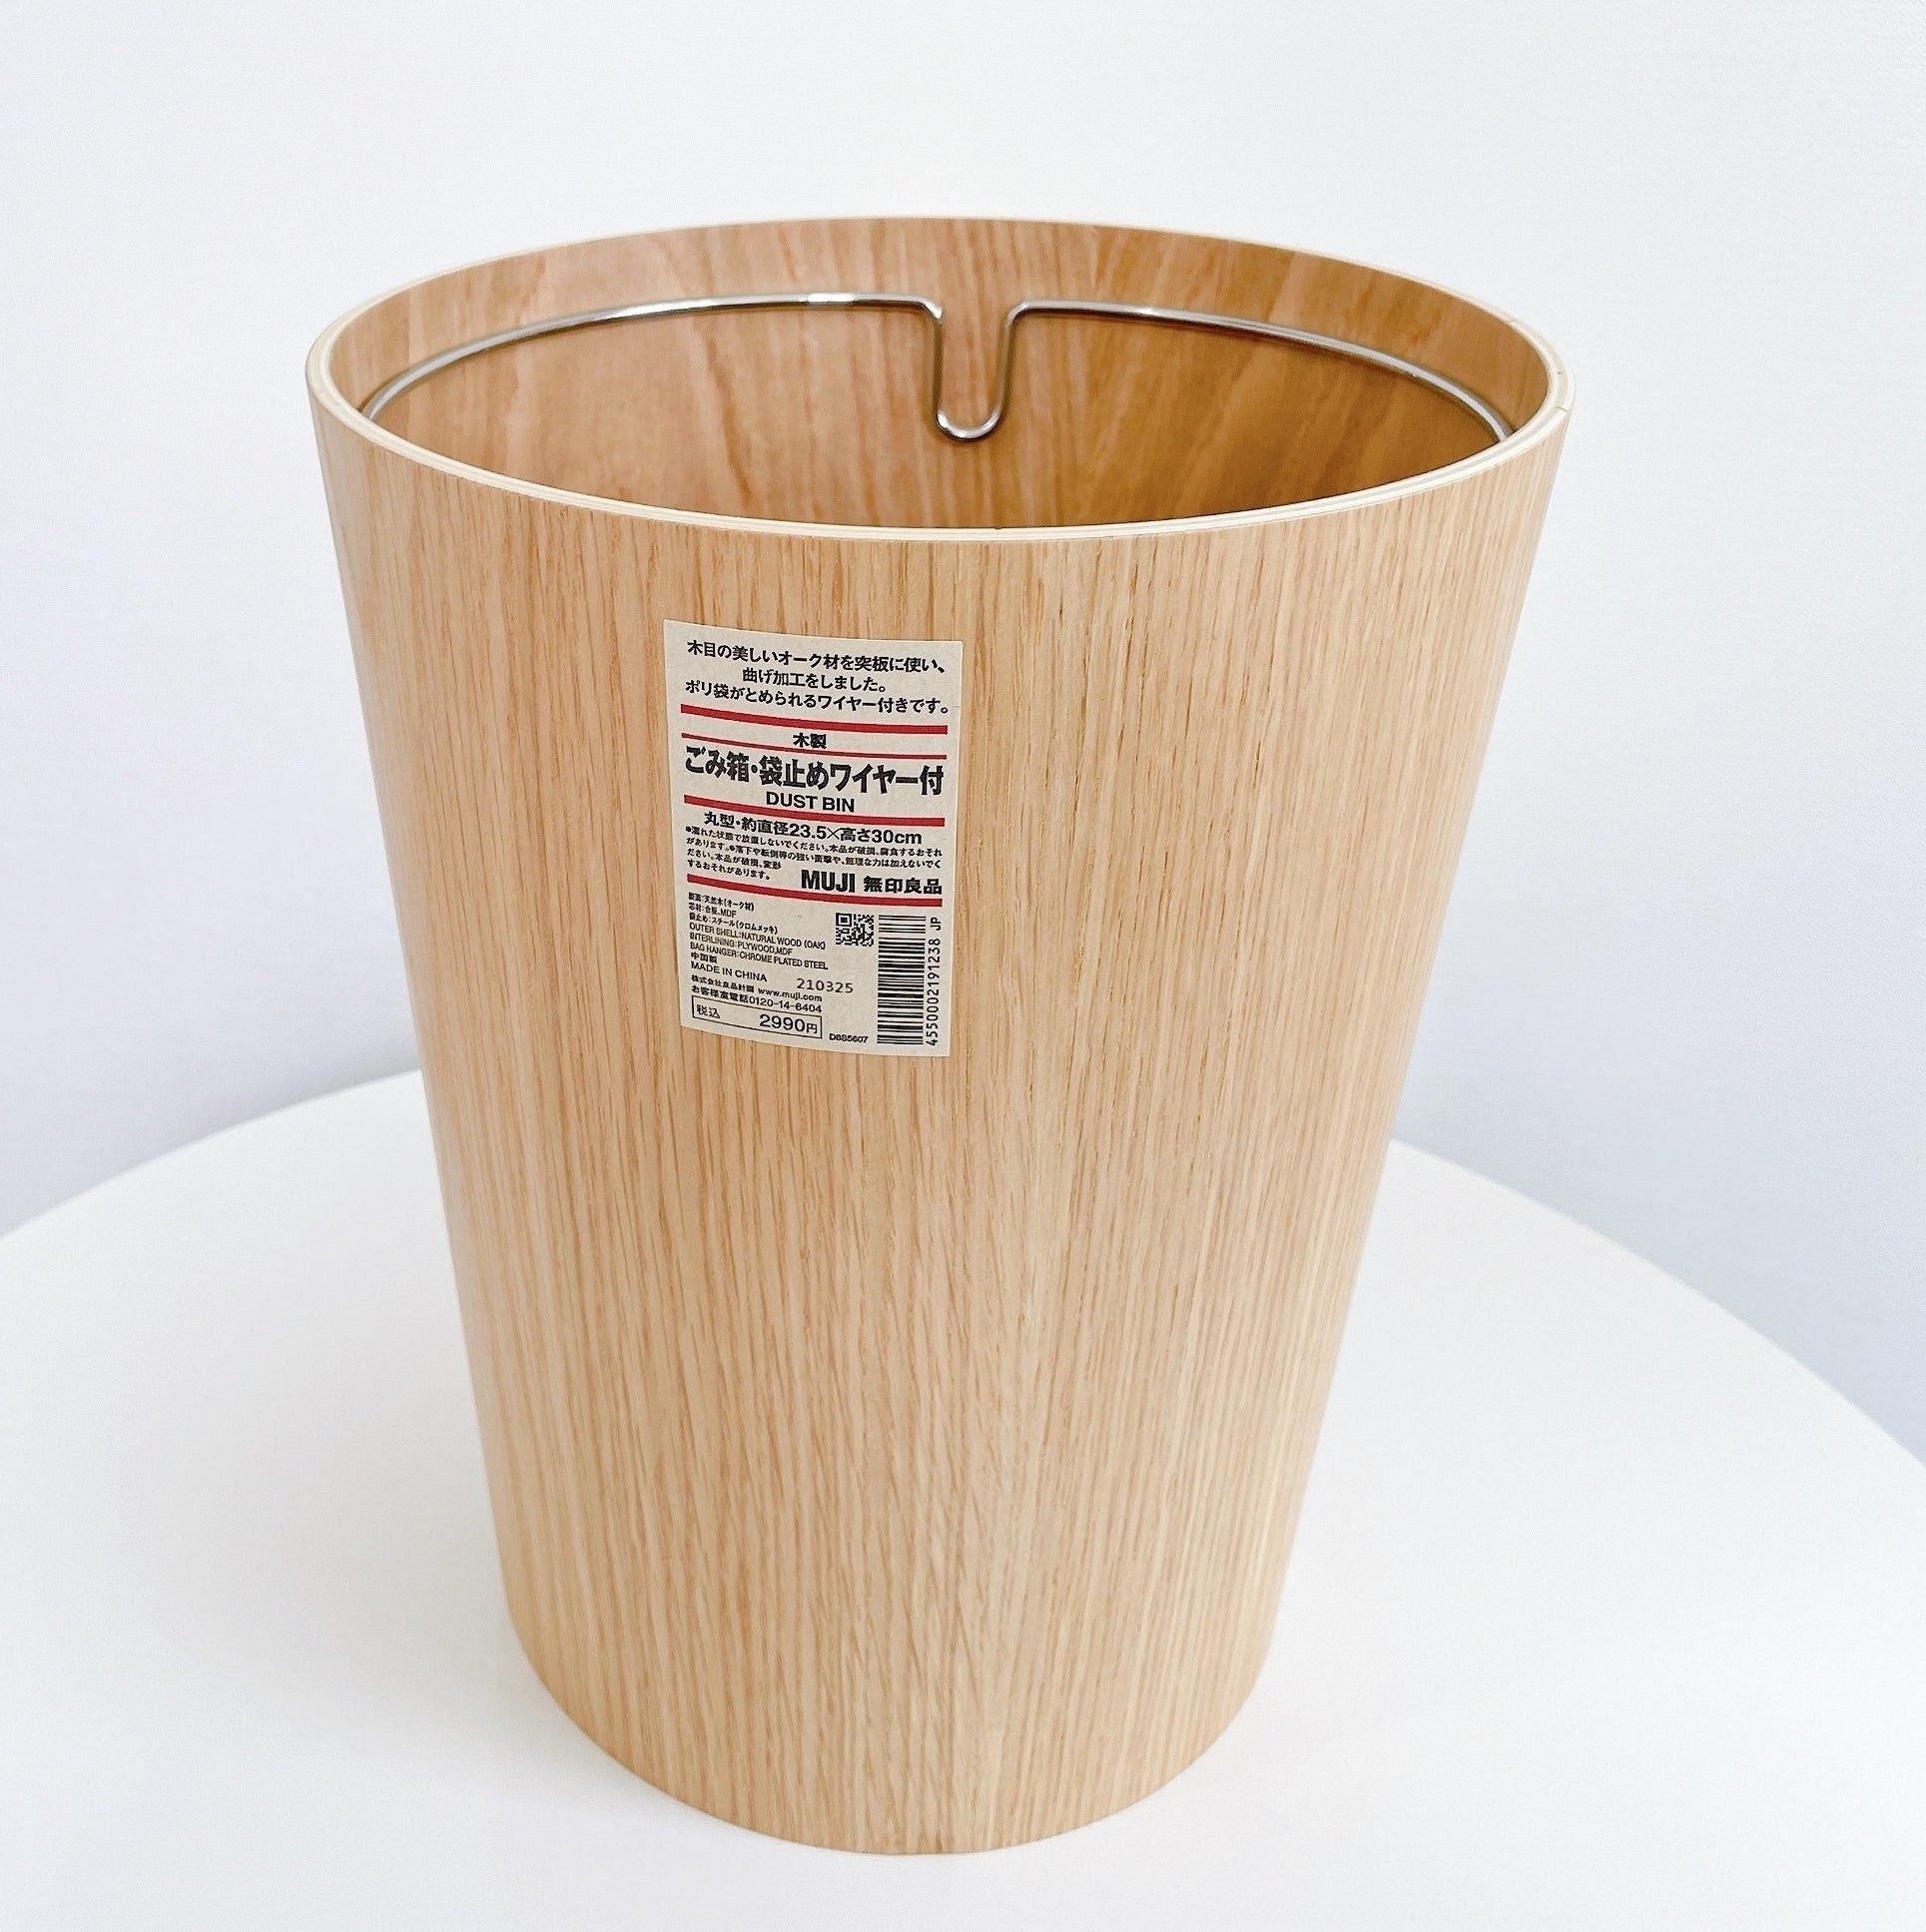 無印良品のおしゃれなダストボックス「木製ごみ箱・袋止めワイヤー付」便利で大人気